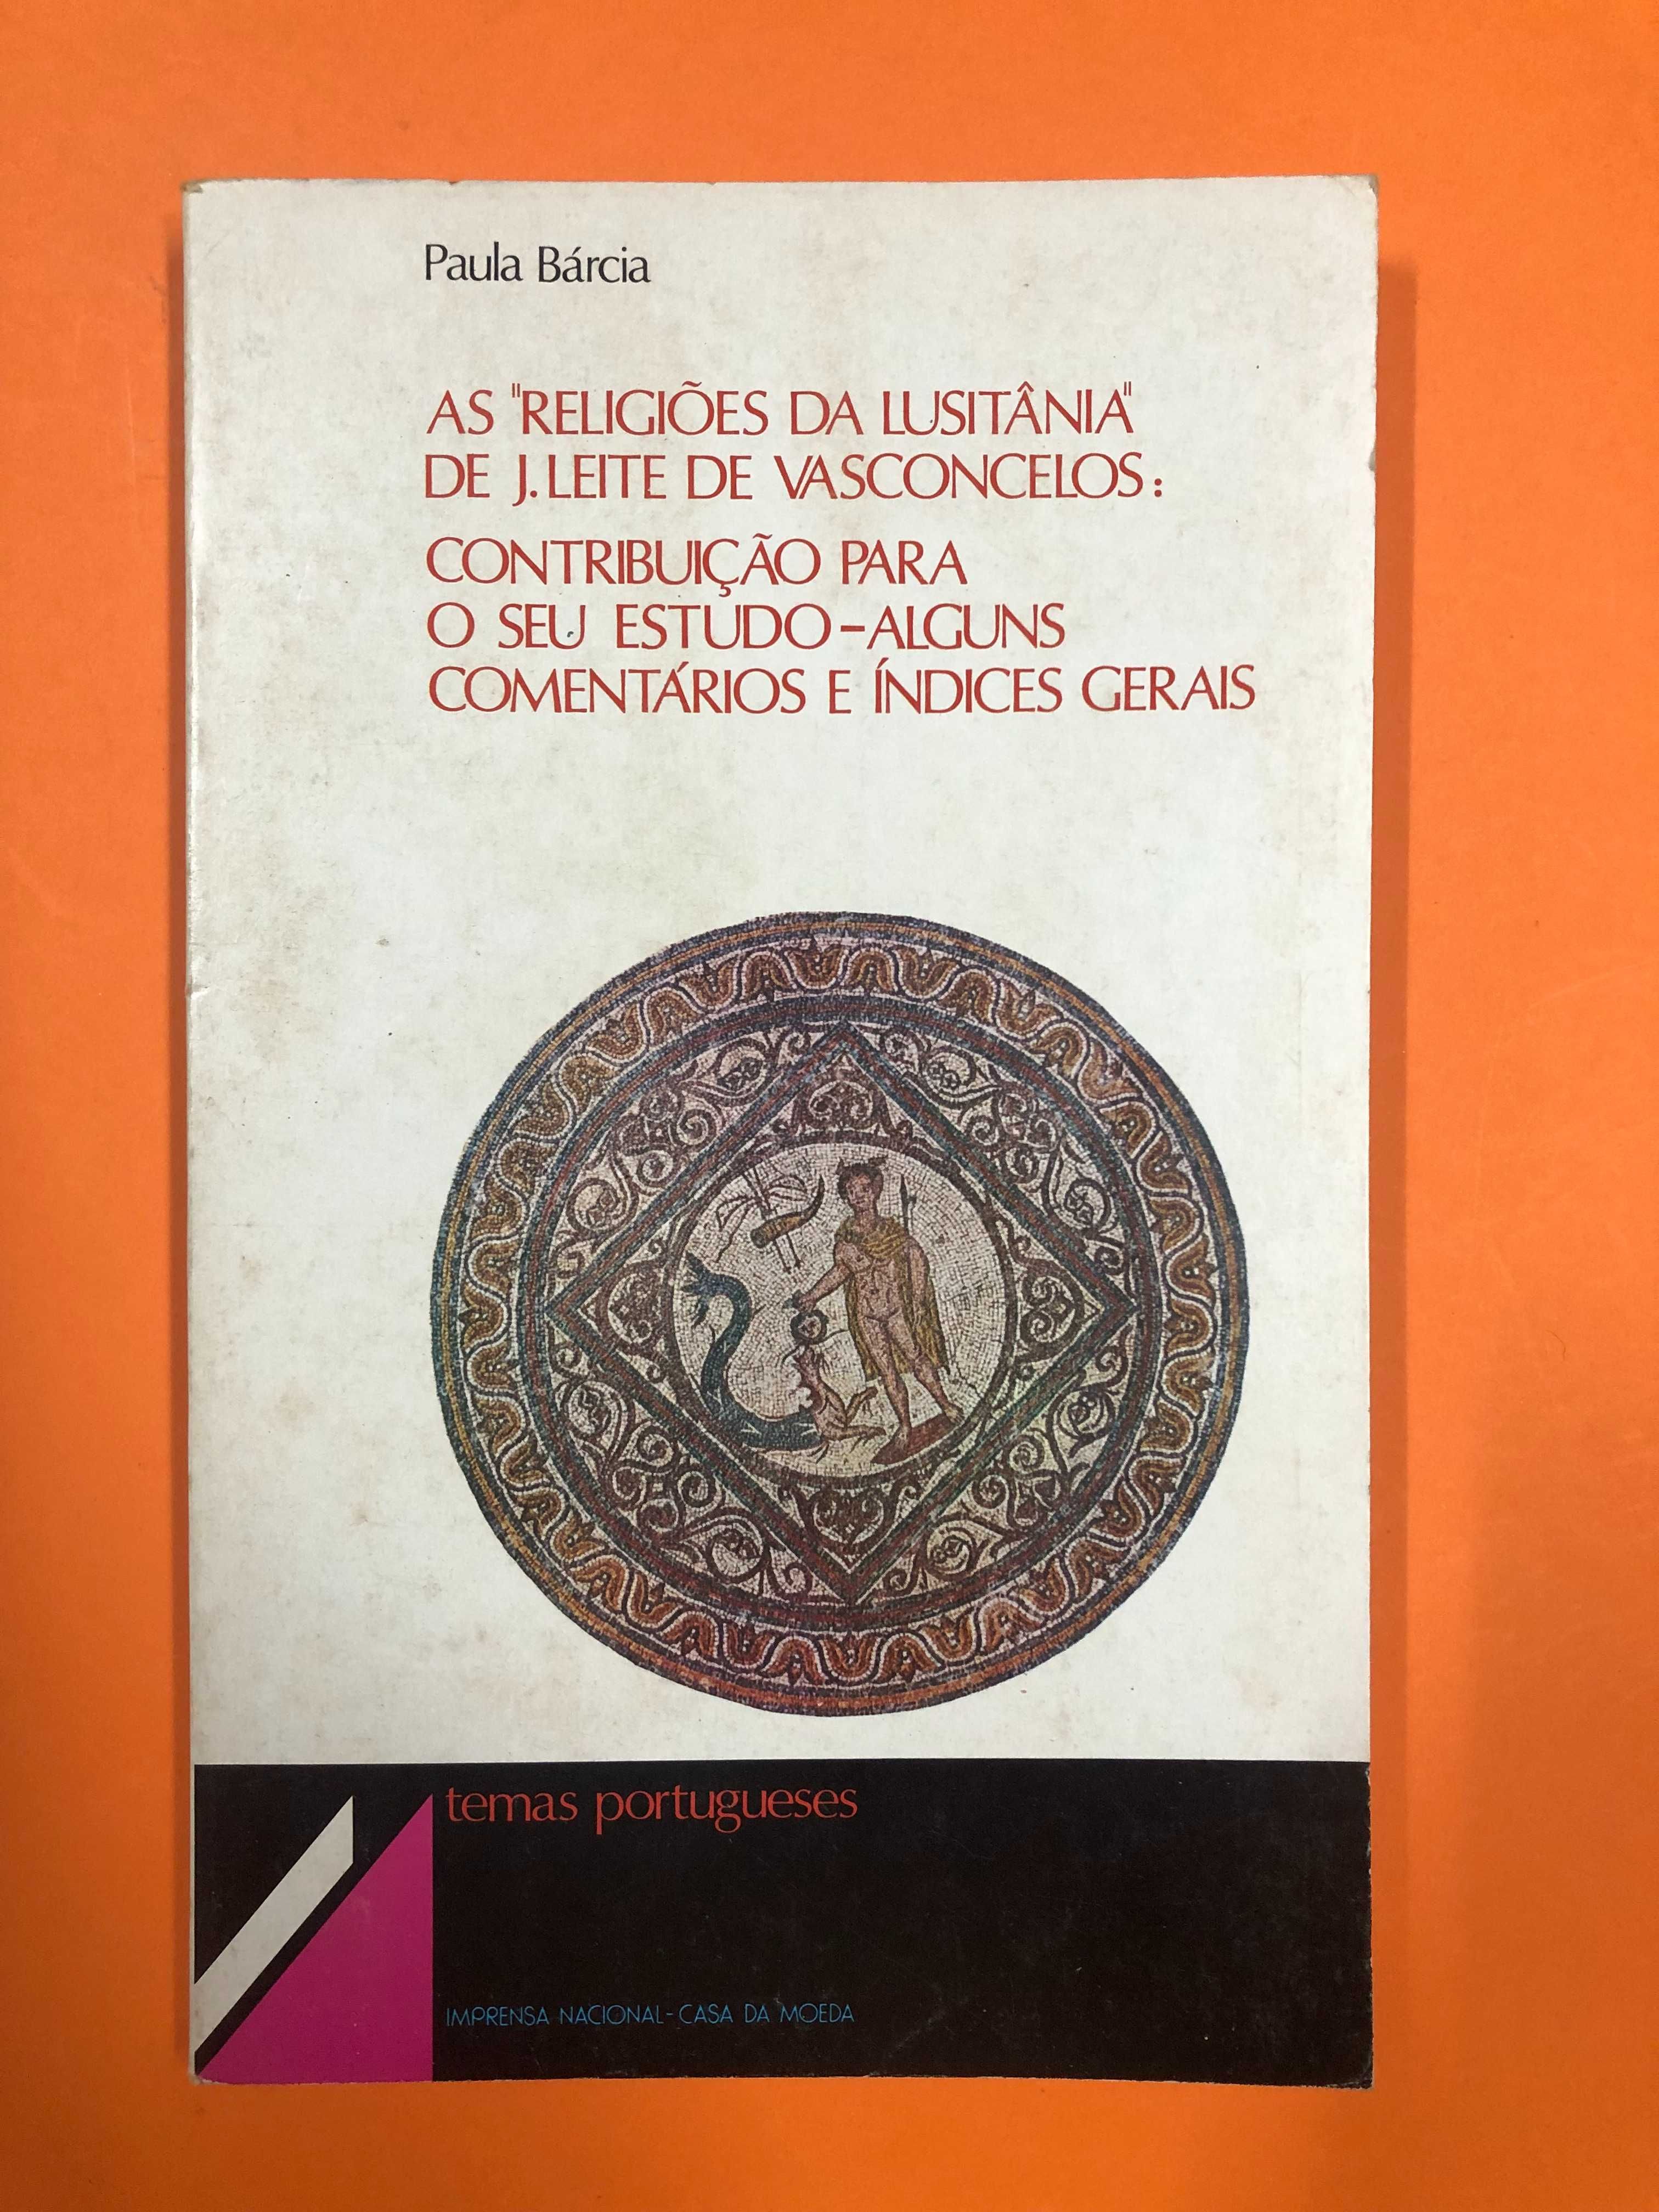 As religiões da Lusitânia de J.Leite de Vasconcelos - Paula Bárcia